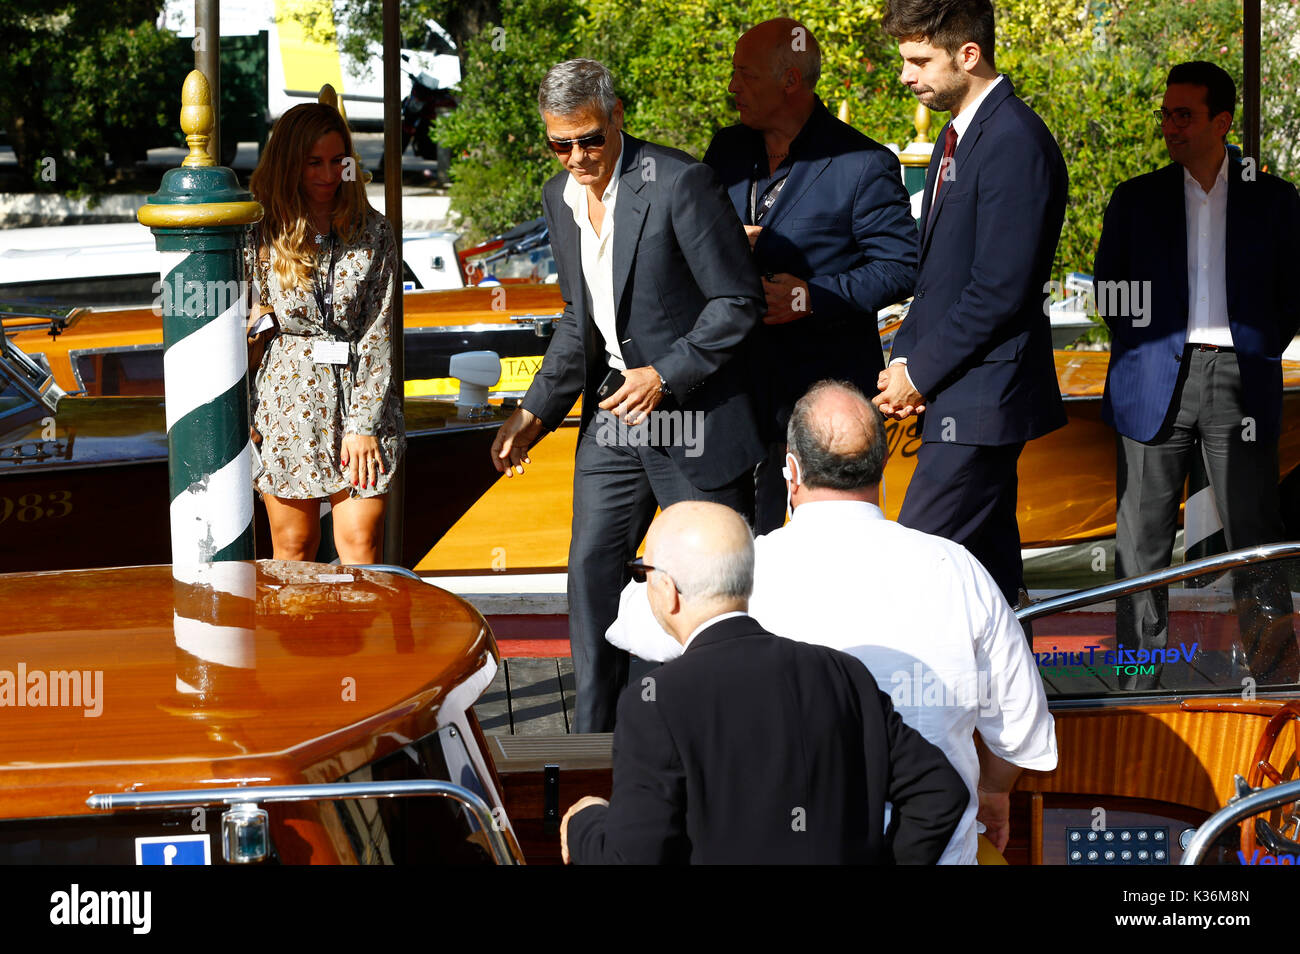 Venedig, Italien. 01 Sep, 2017. George Clooney gesehen, verlässt das Hotel Excelsior nach Interviews geben während des 74. Filmfestival von Venedig am 01 September, 2017 in Venedig, Italien Quelle: geisler - fotopress/alamy leben Nachrichten Stockfoto